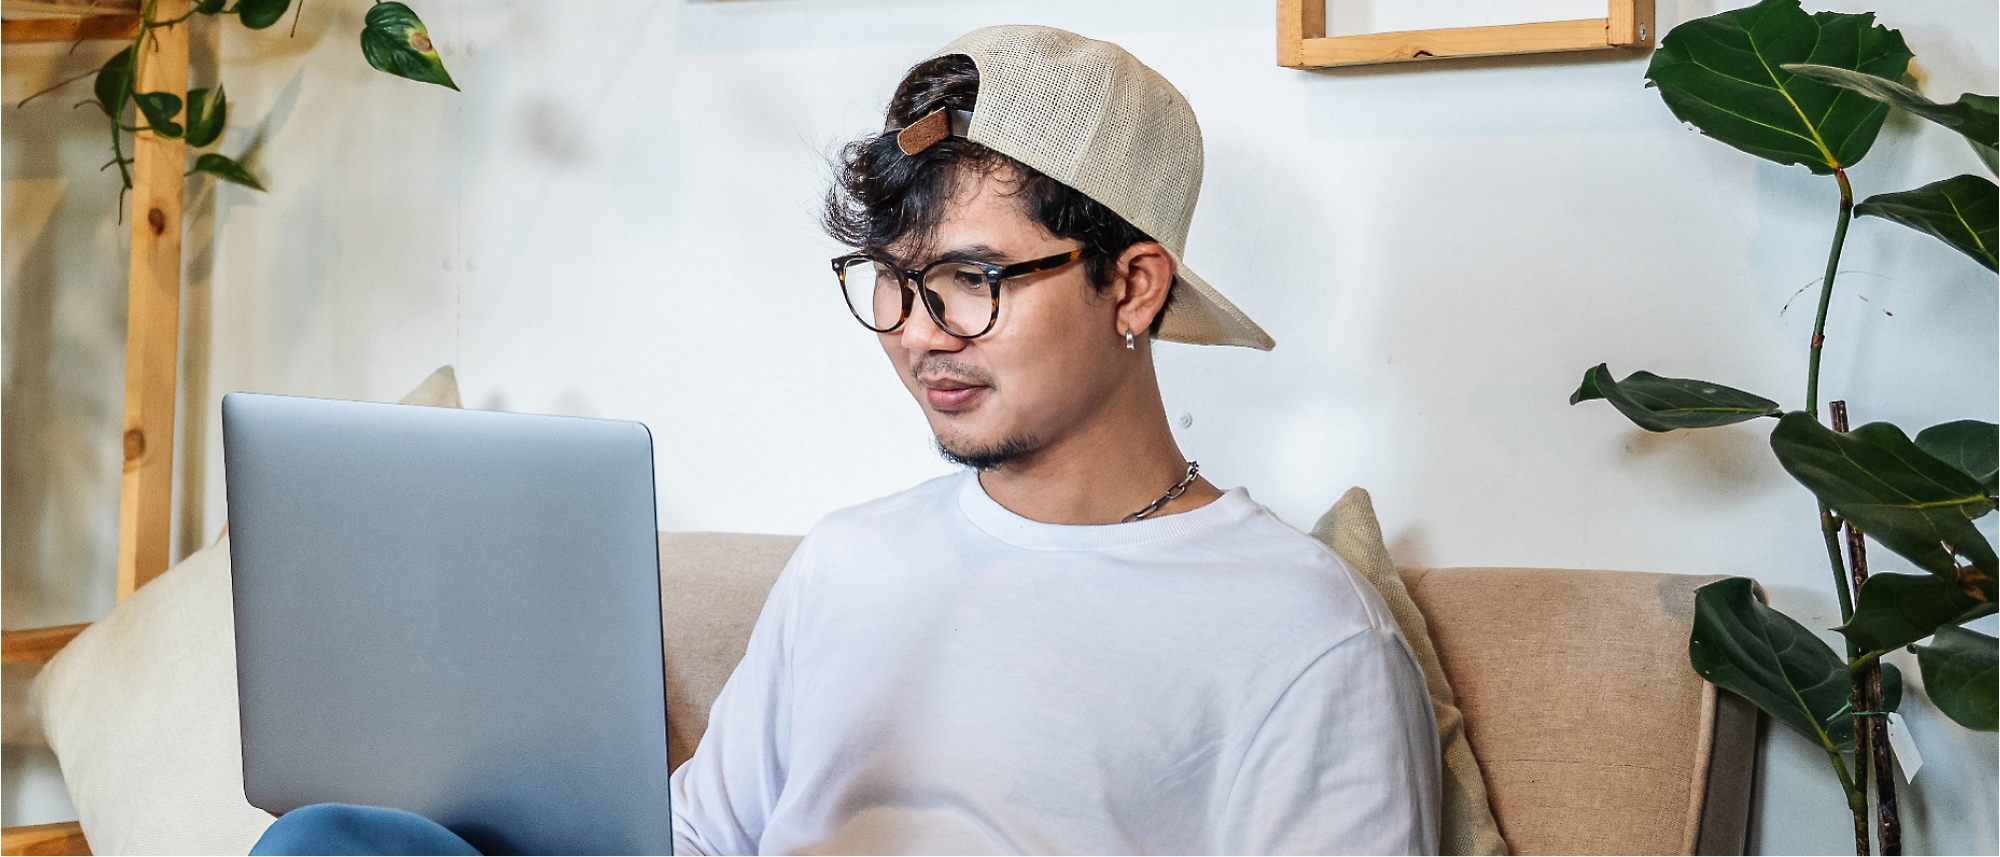 Eine Person, die eine Brille und eine nach hinten gerichtete Mütze trägt, sitzt auf einer Couch und benutzt einen Laptop.